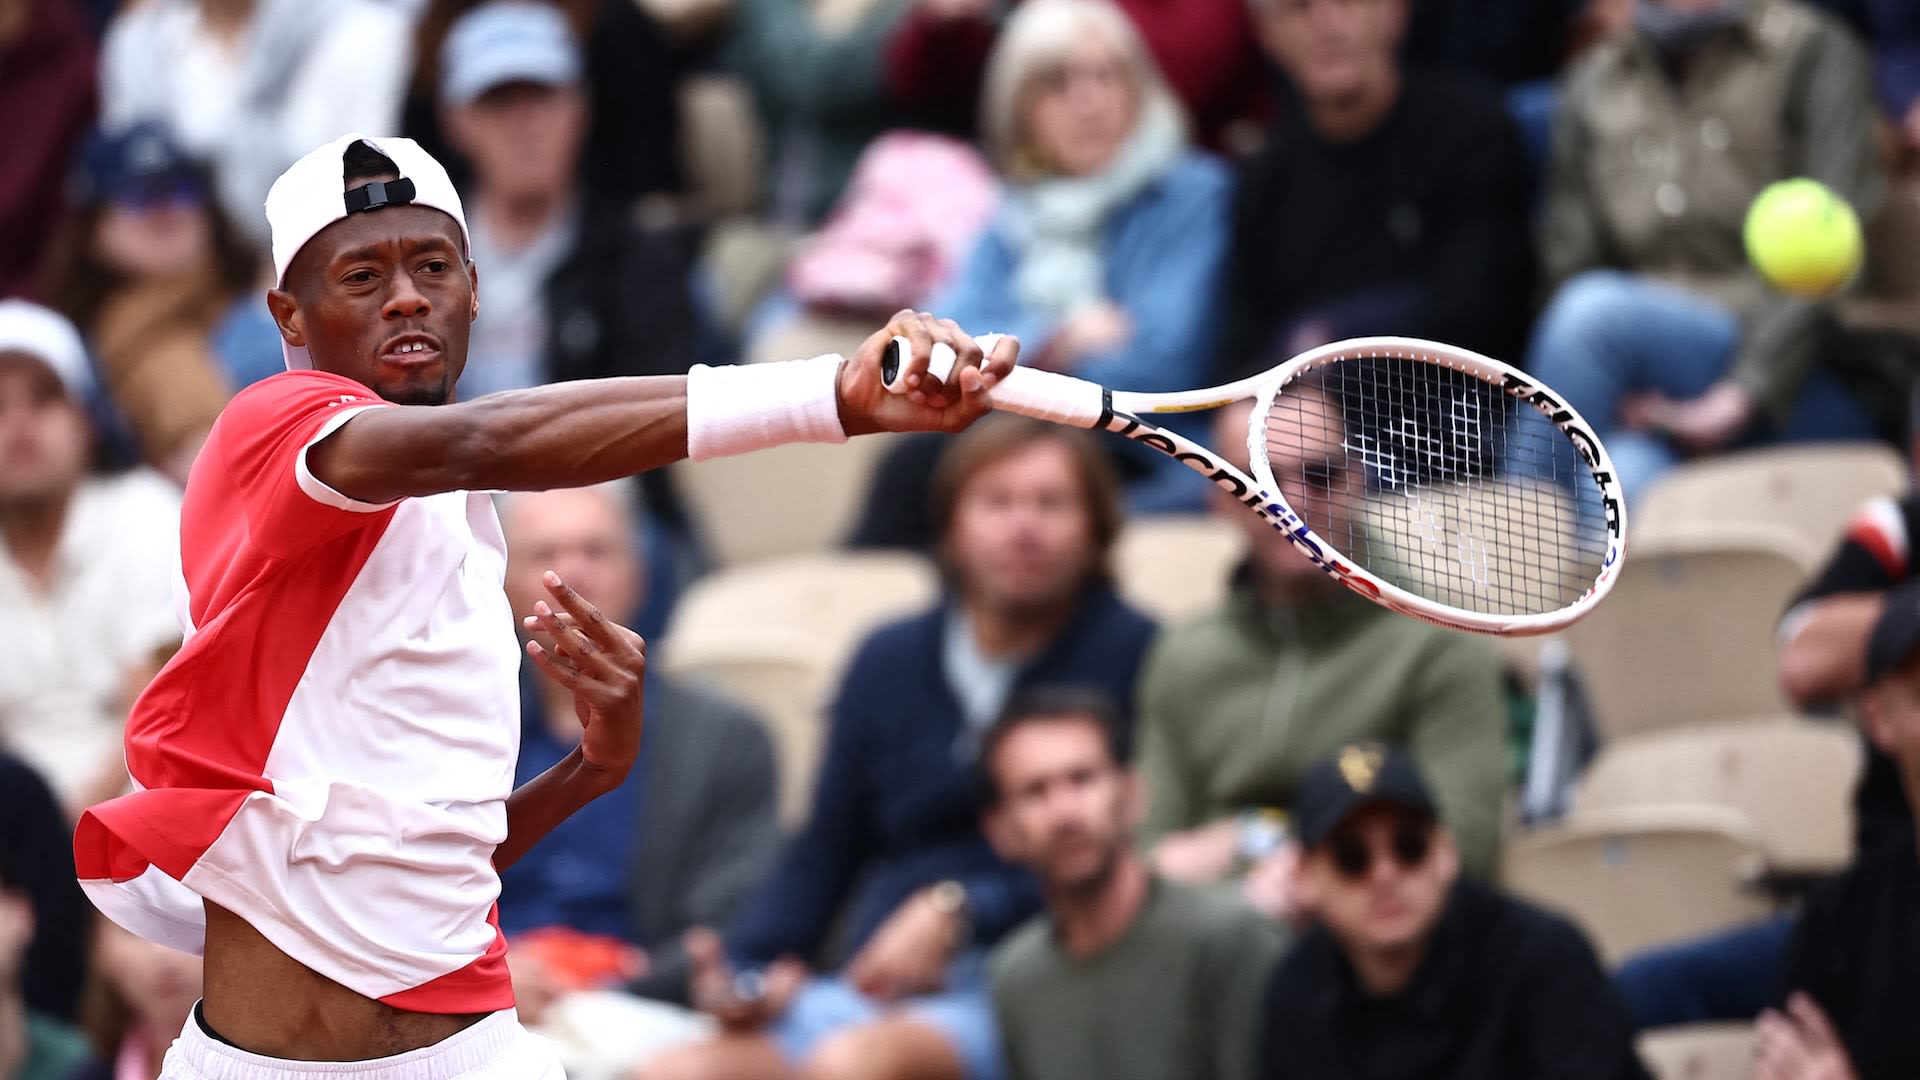 WATCH: Christopher Eubanks gives racquet to fan after Jannik Sinner Roland Garros loss | Tennis.com